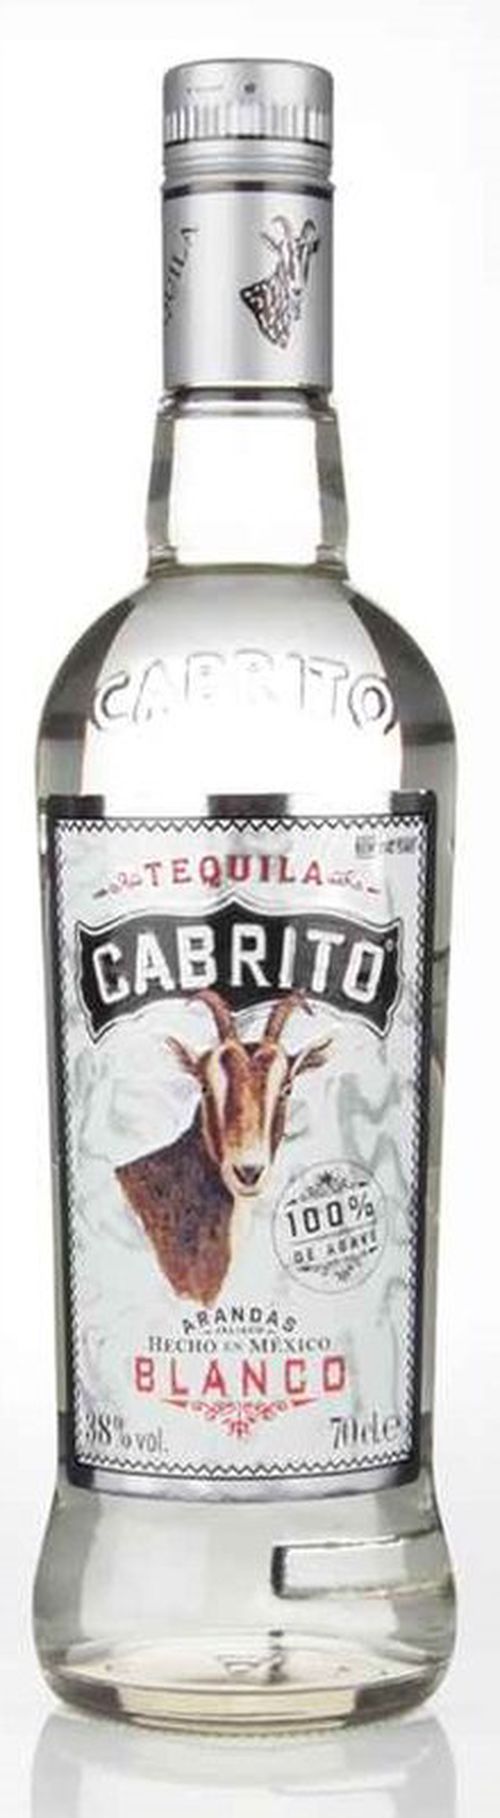 Cabrito Tequila Blanco 0,7l